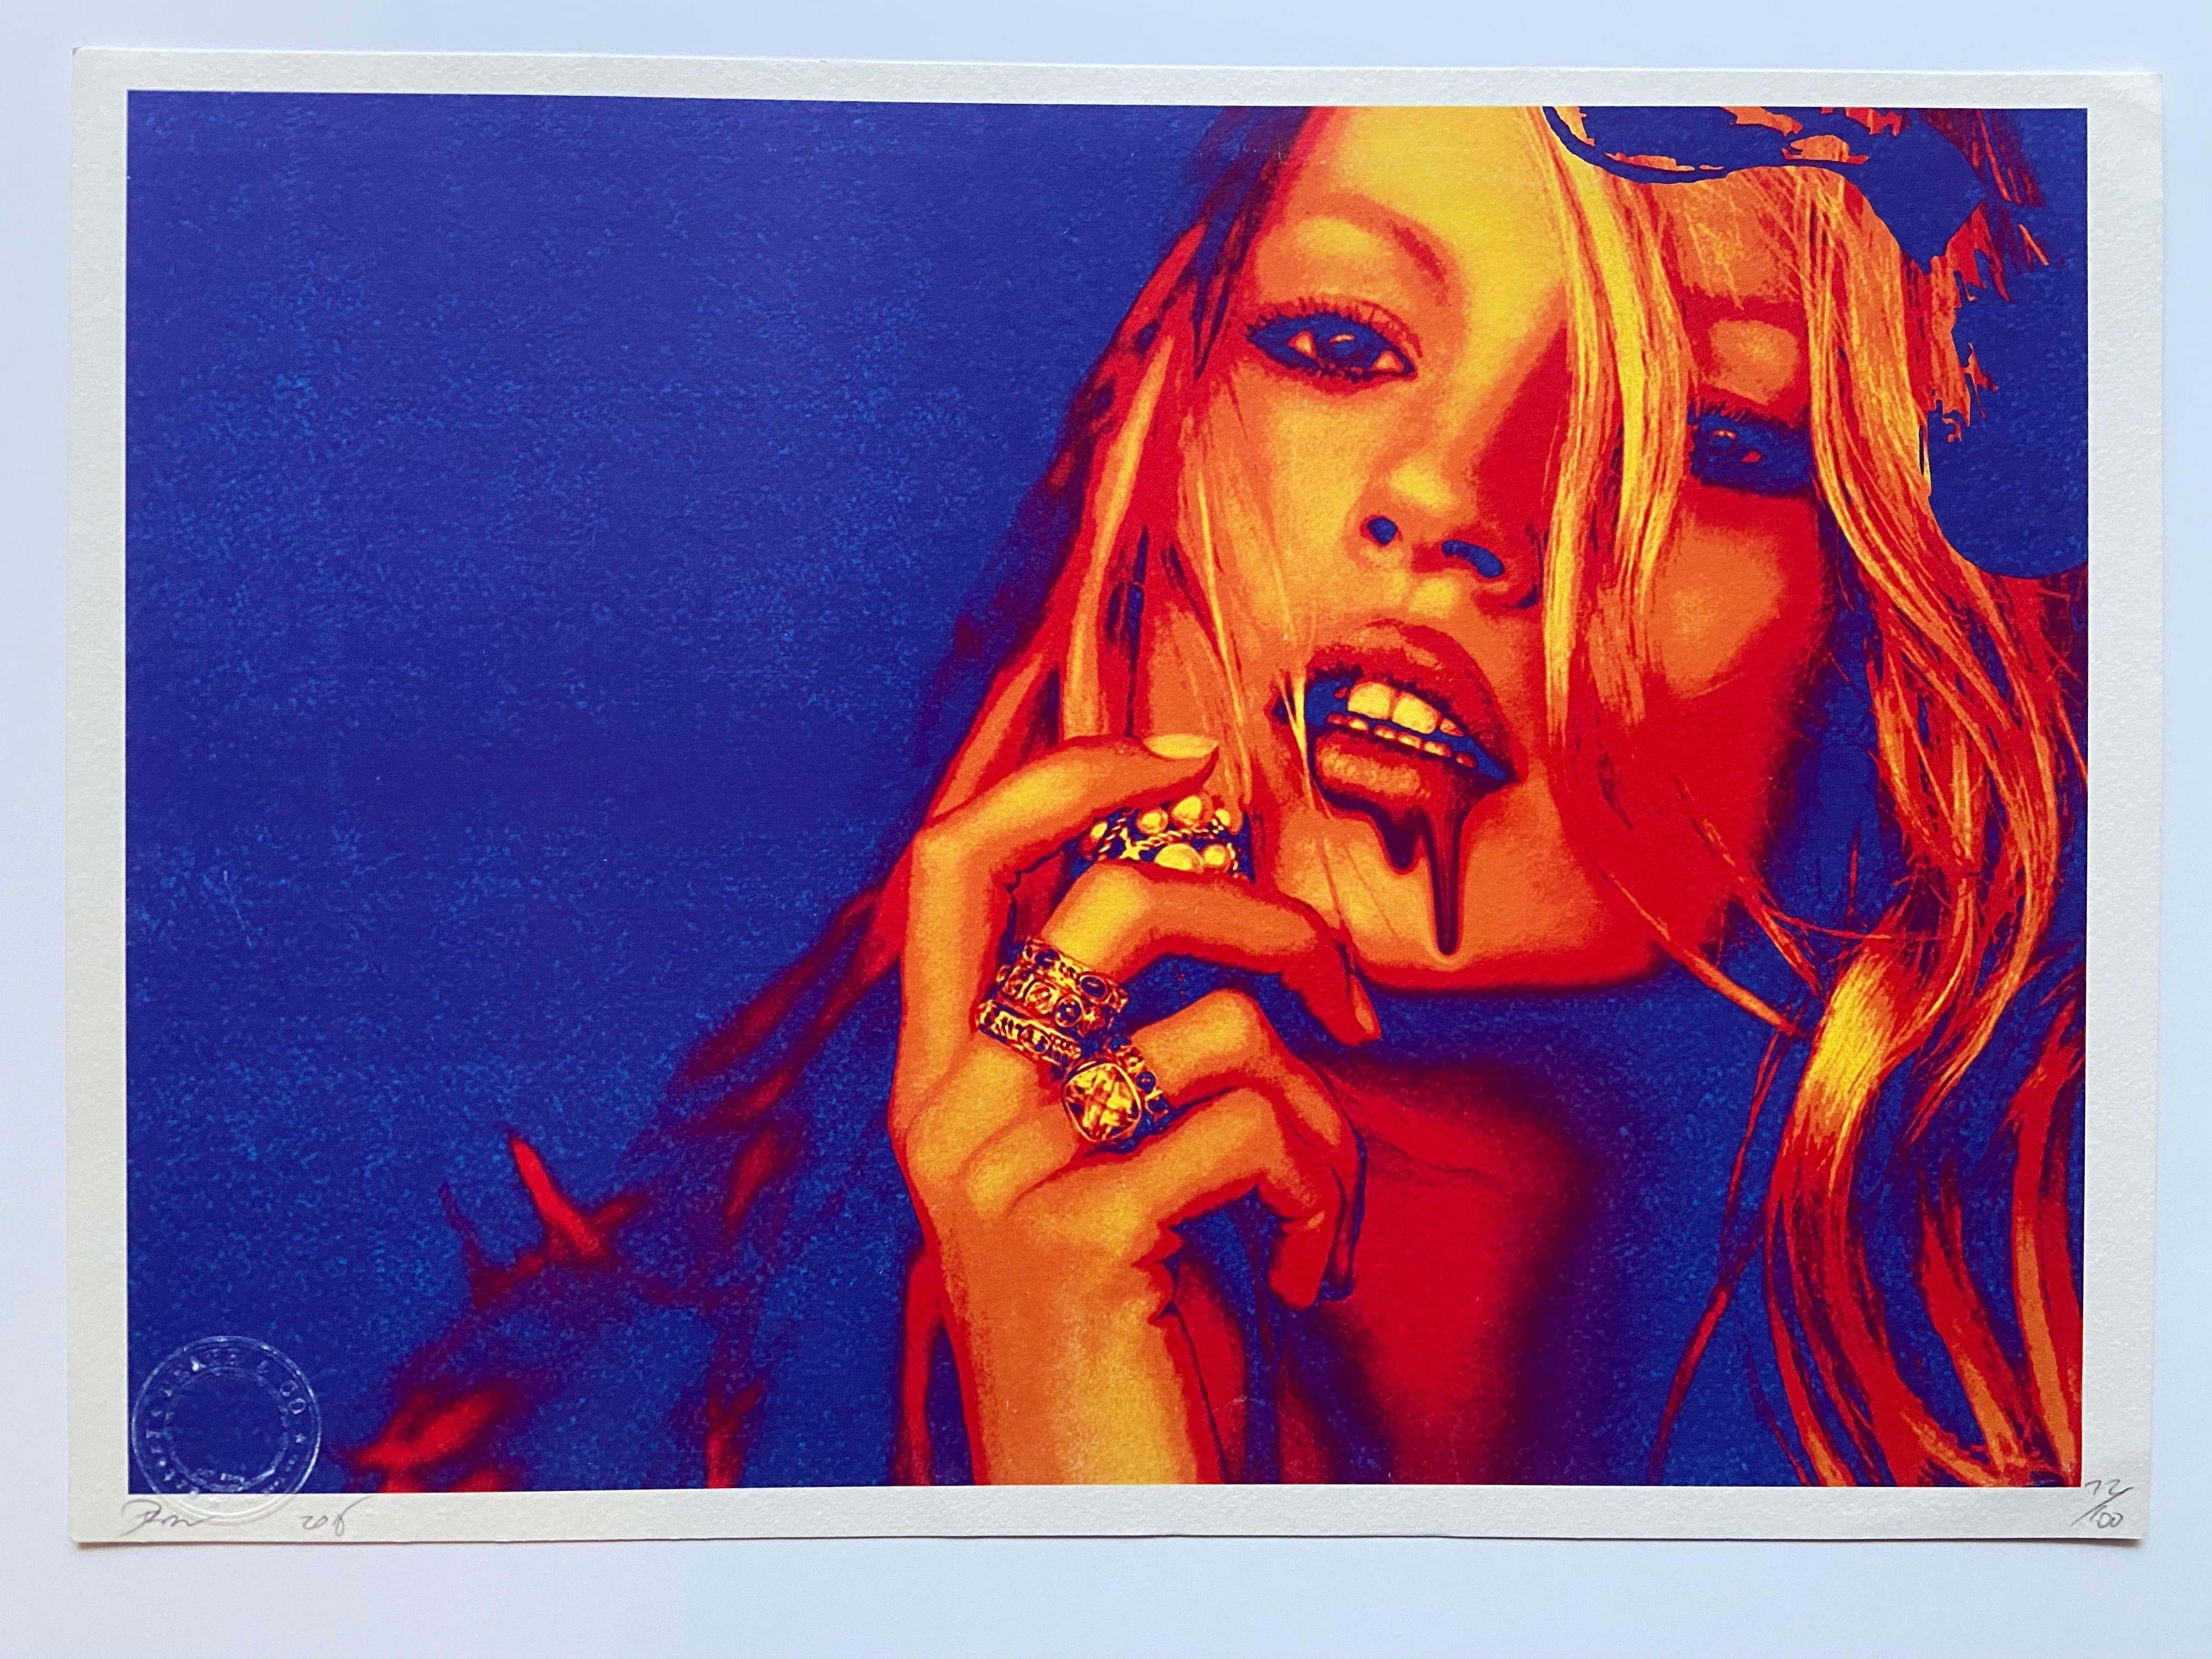 Tod NYC - Kate Moss lila Schmuck - 2016 
Siebdruck signiert, nummeriert und datiert mit Bleistift
Trockener Stempel
2 Künstlerzertifikate
45 x 32 cm 
109 Euro